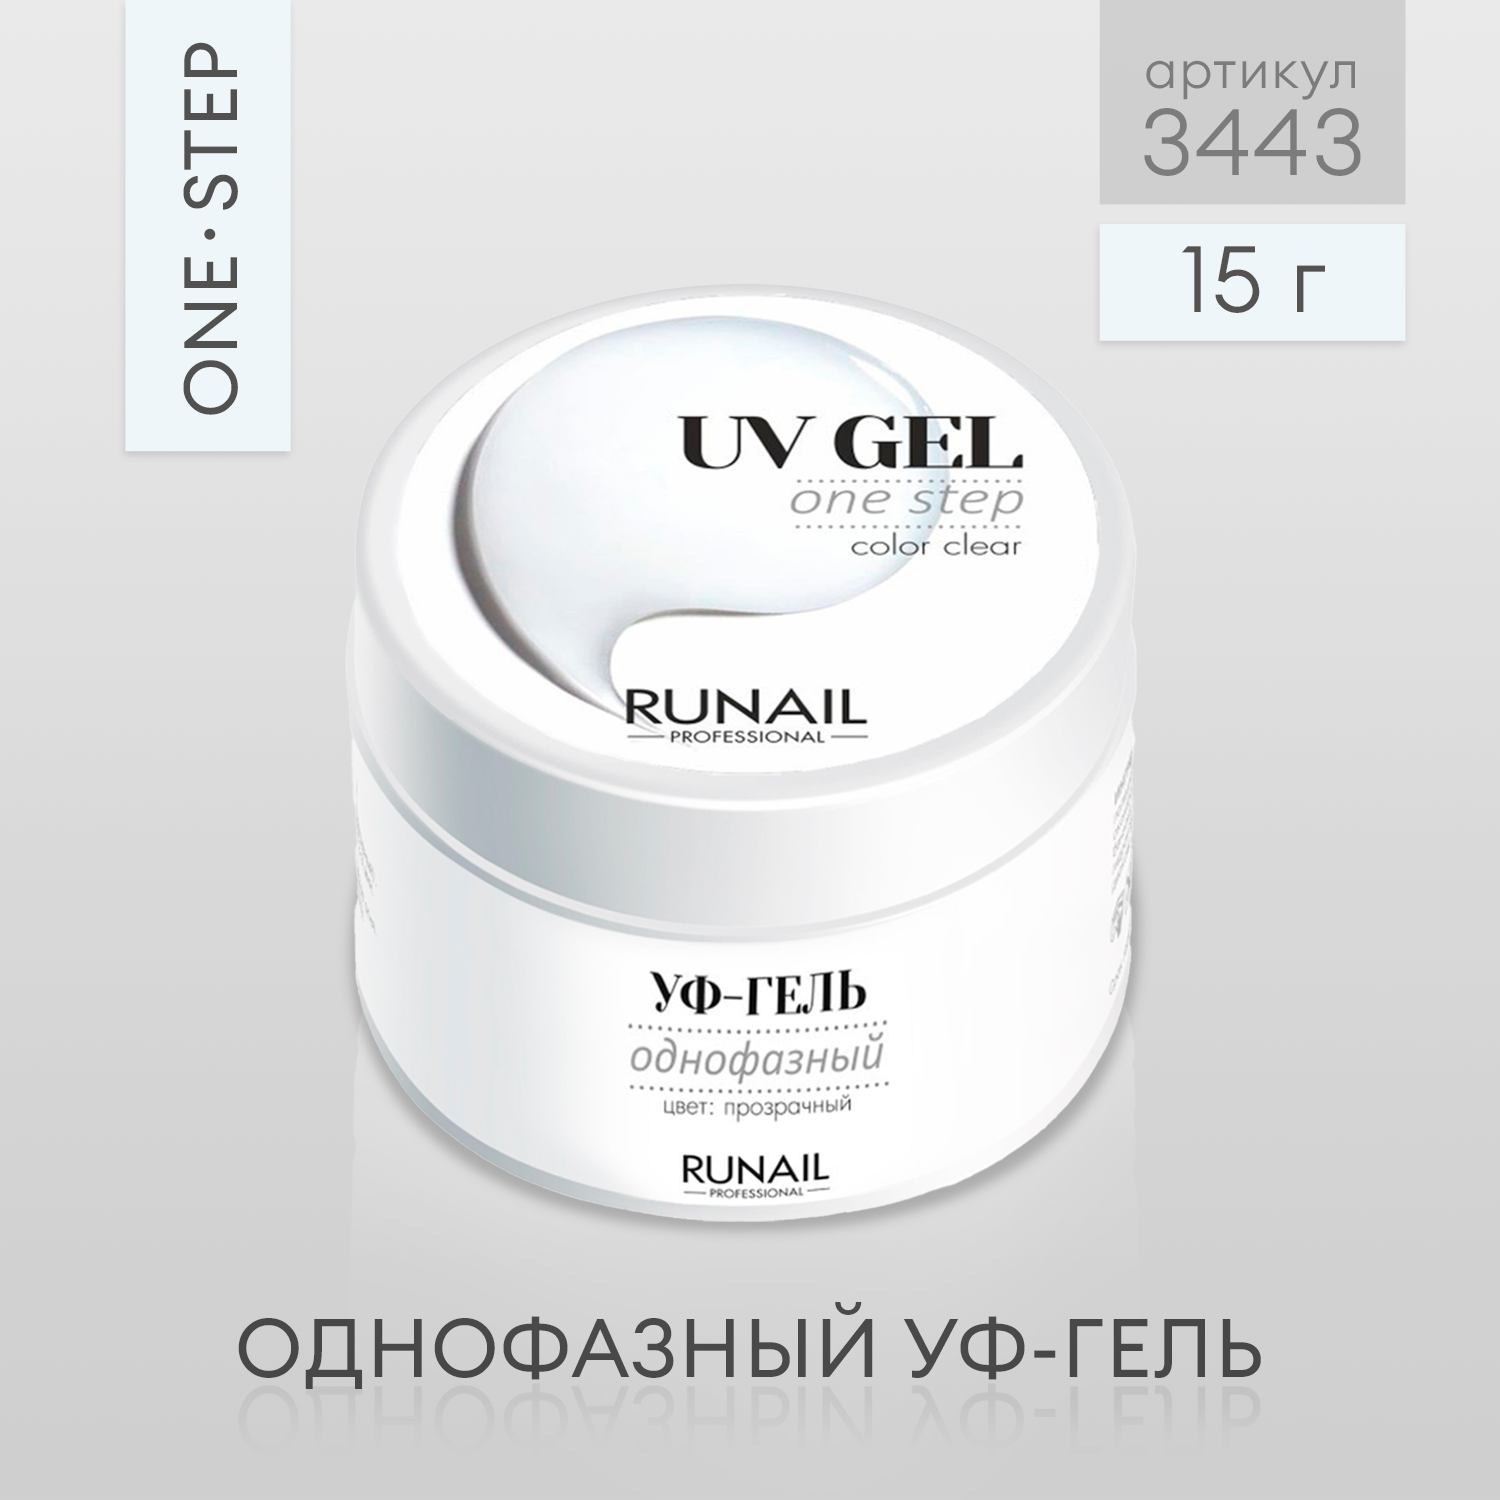 RuNail Professional/ Однофазный УФ-гель (цвет: Прозрачный), 15 г № 3443